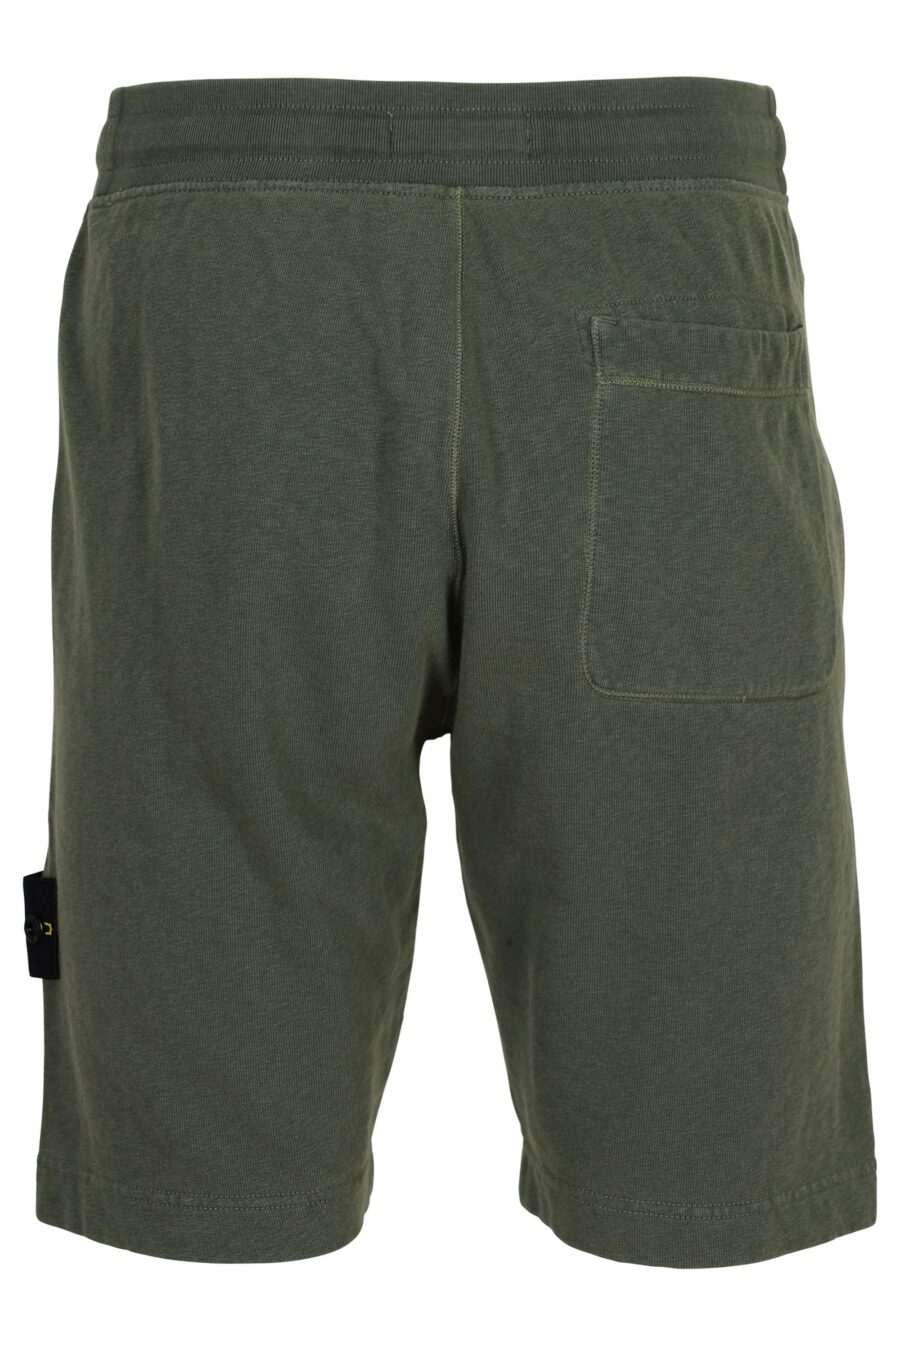 Pantalón de chándal corto verde militar con logo parche brújula - 8052572902062 1